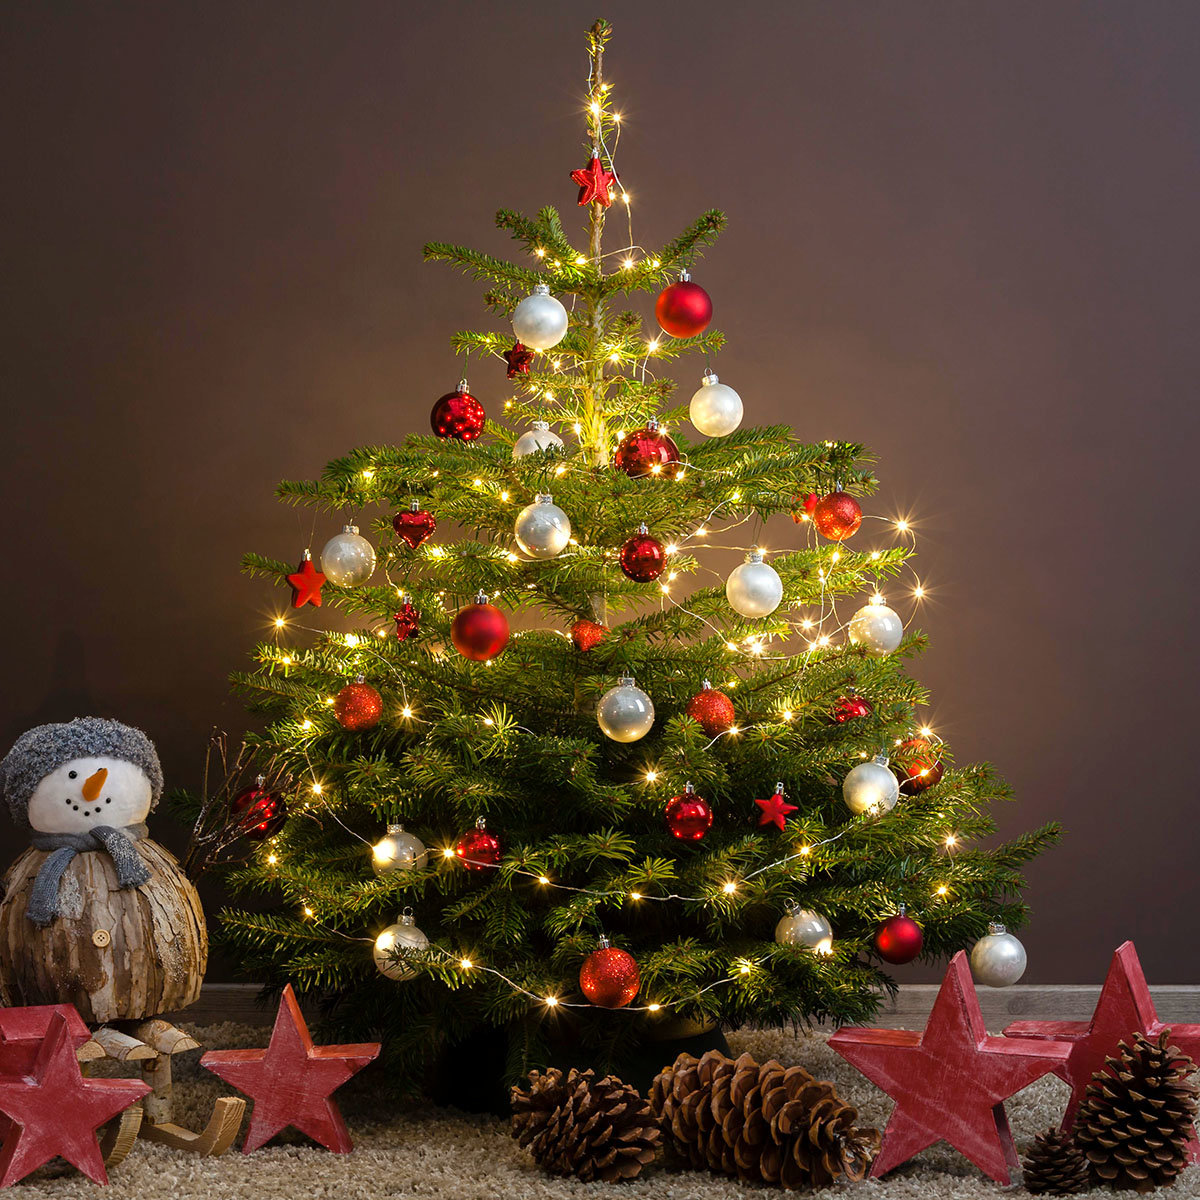 Weihnachtsbaum Nordmanntanne 100-125 cm, frisch geschlagen
| #2